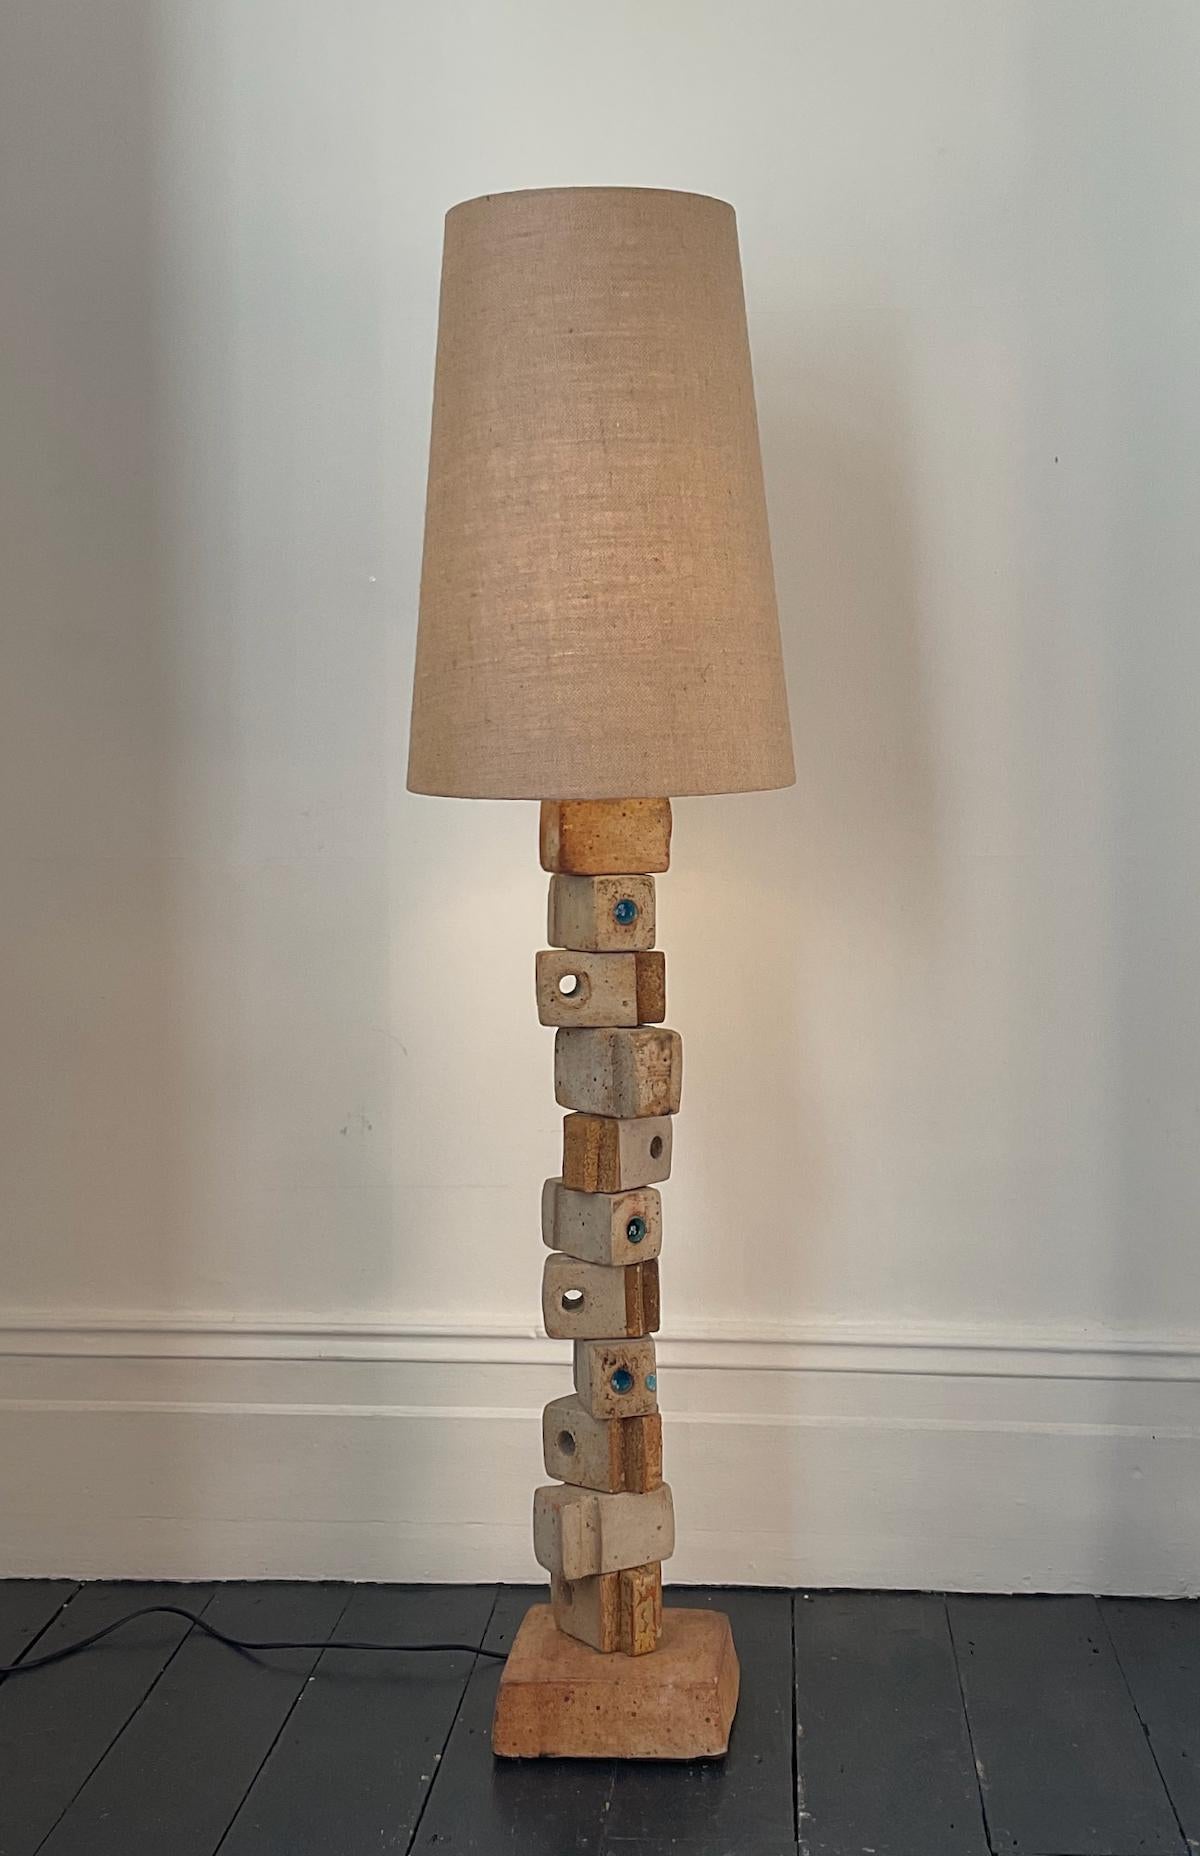 Lampe TOTEM monumentale en céramique de Bernard Rooke, Angleterre, milieu du 20e siècle.

Une belle pièce sculpturale, composée d'éléments en céramique dans des tons naturels de terre cuite et de pierre. Un modèle très inhabituel avec des blocs